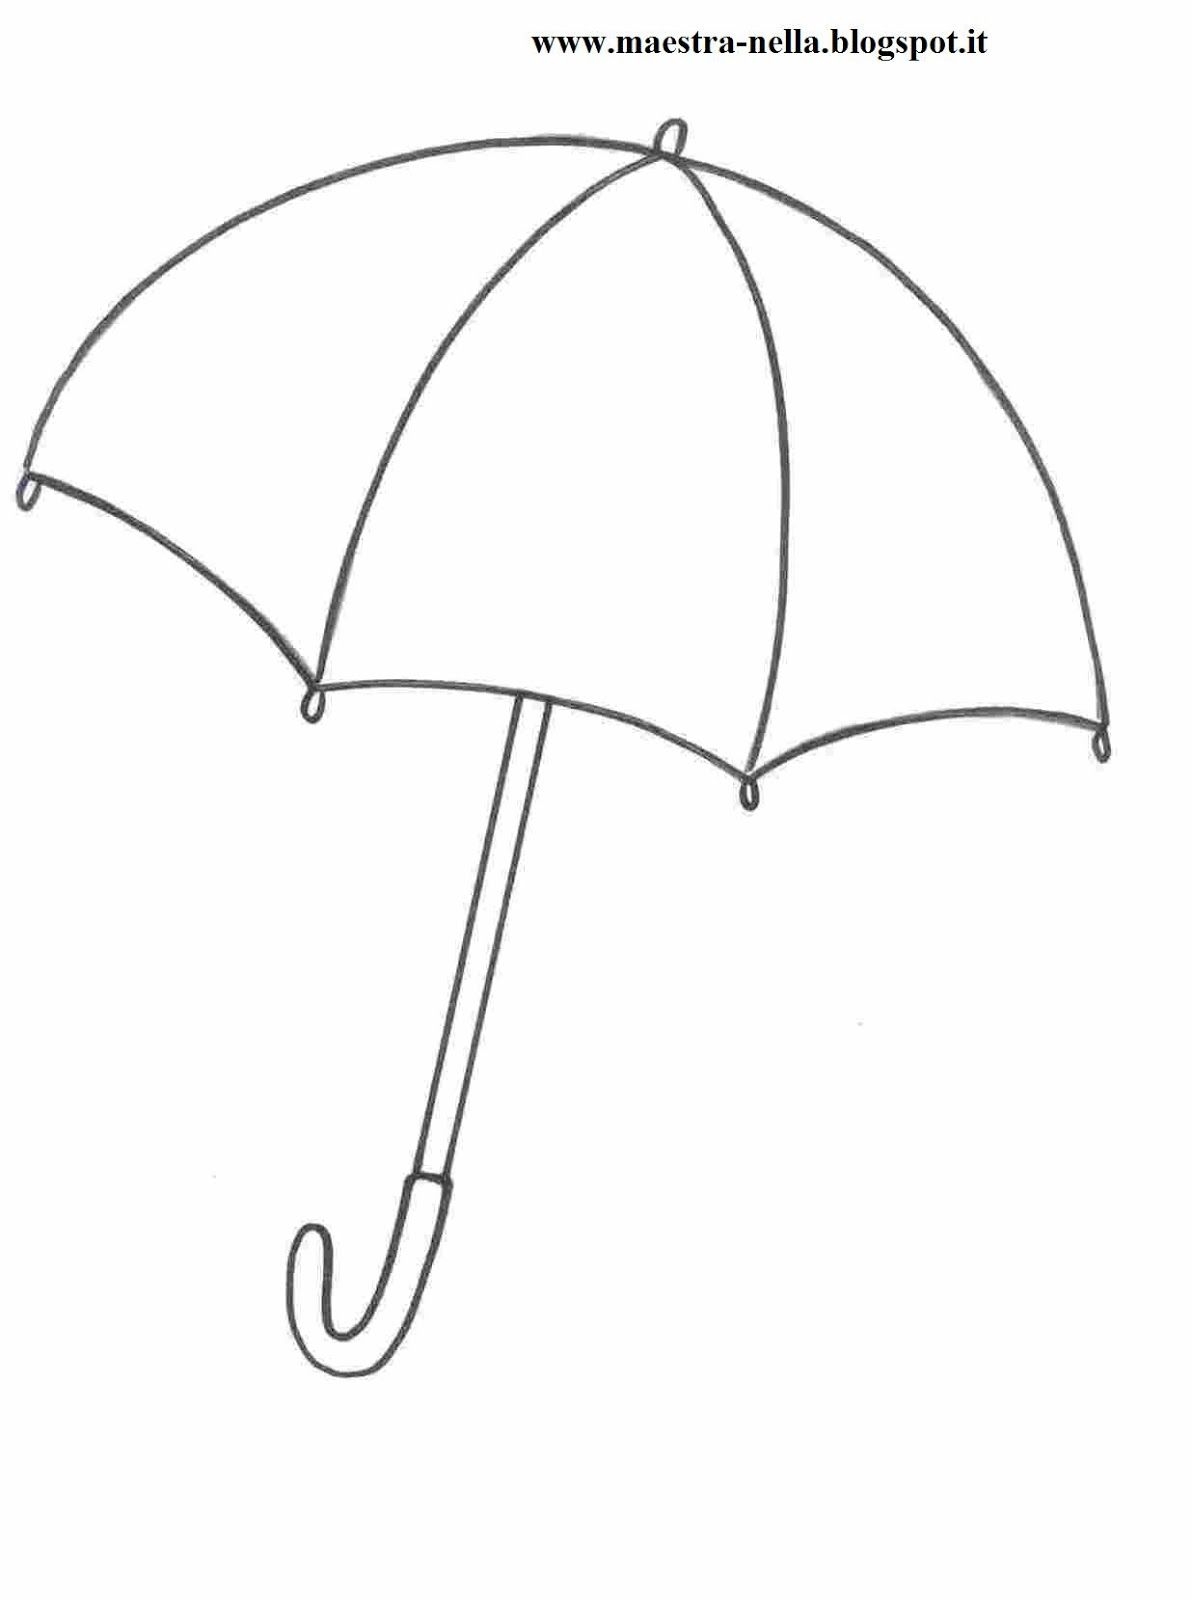 Зонтик раскраска для детей